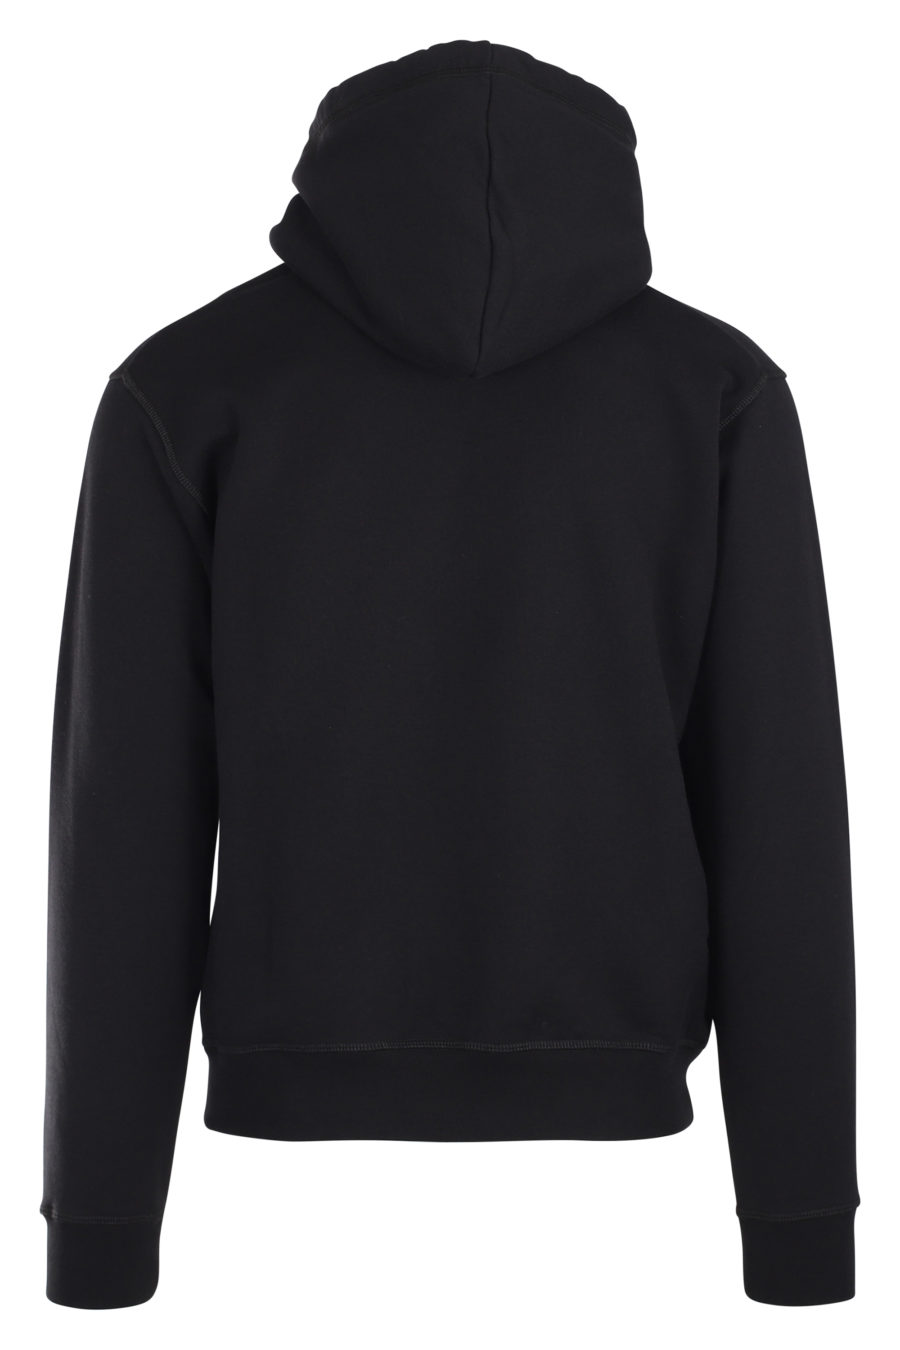 Black hooded sweatshirt with "icon" logo - IMG 9870